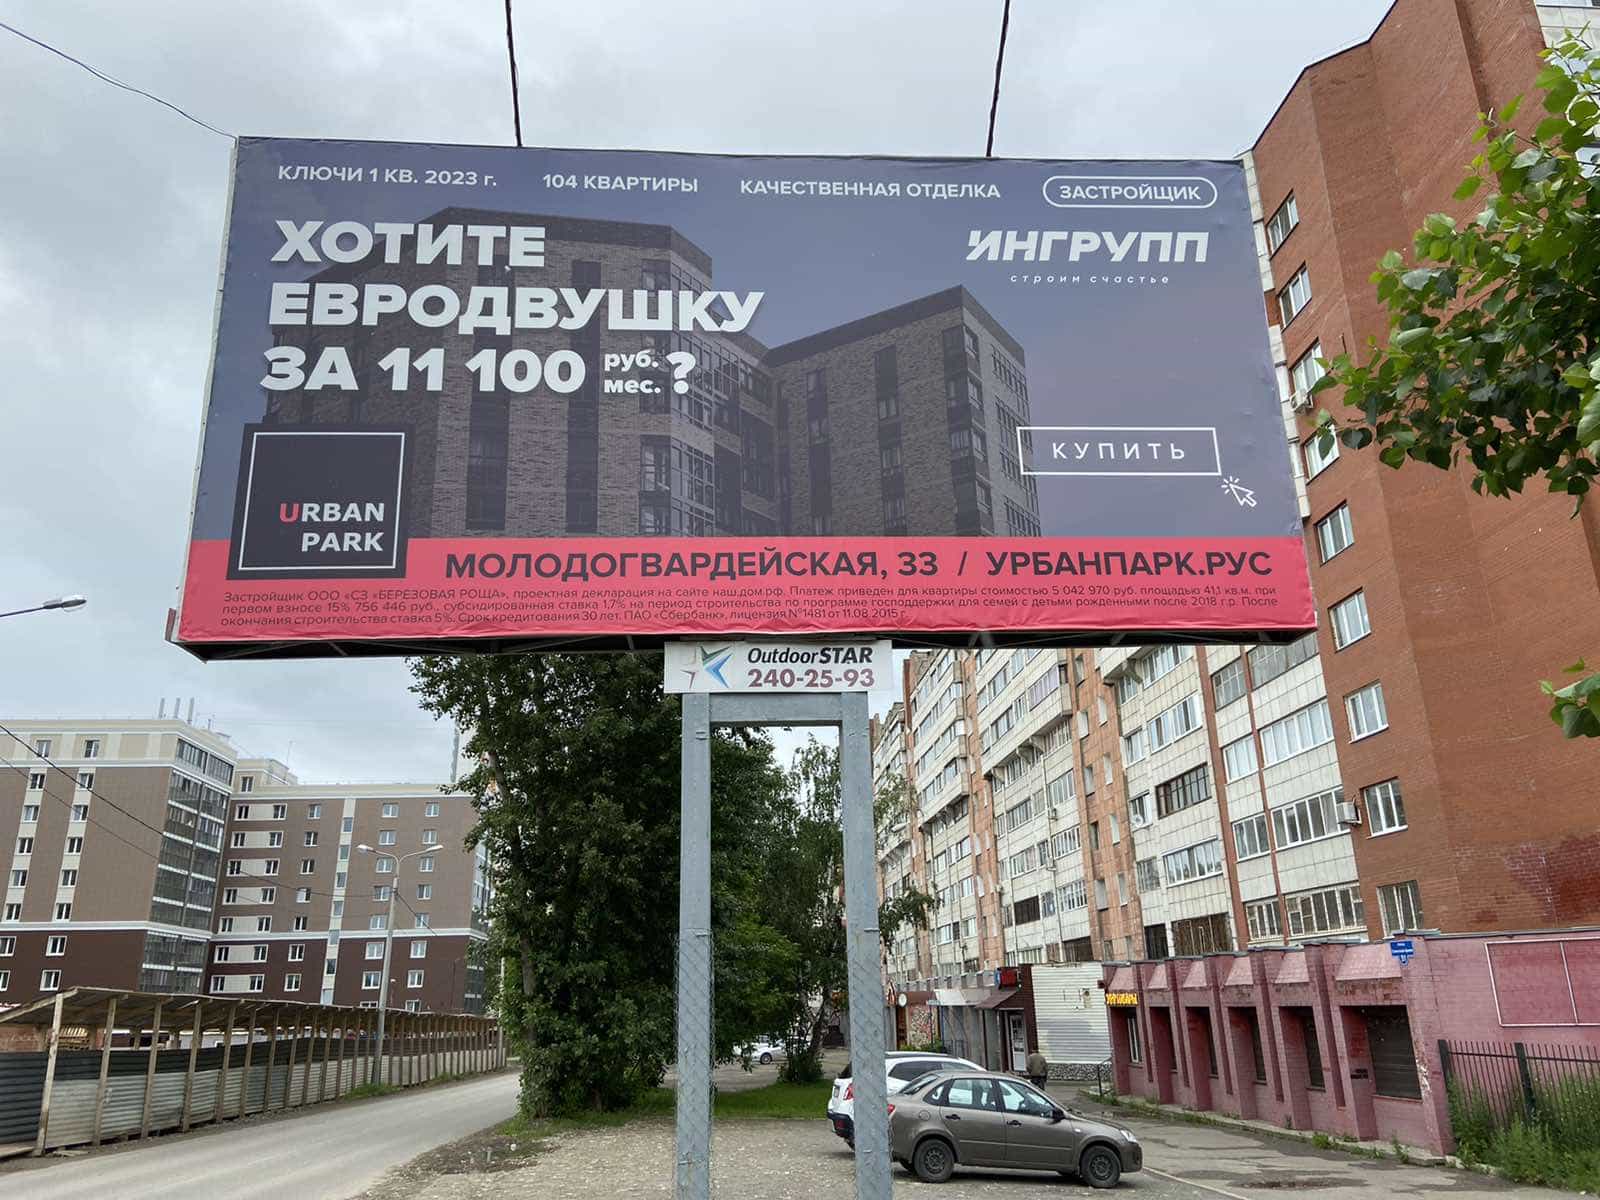 Текст на билборде